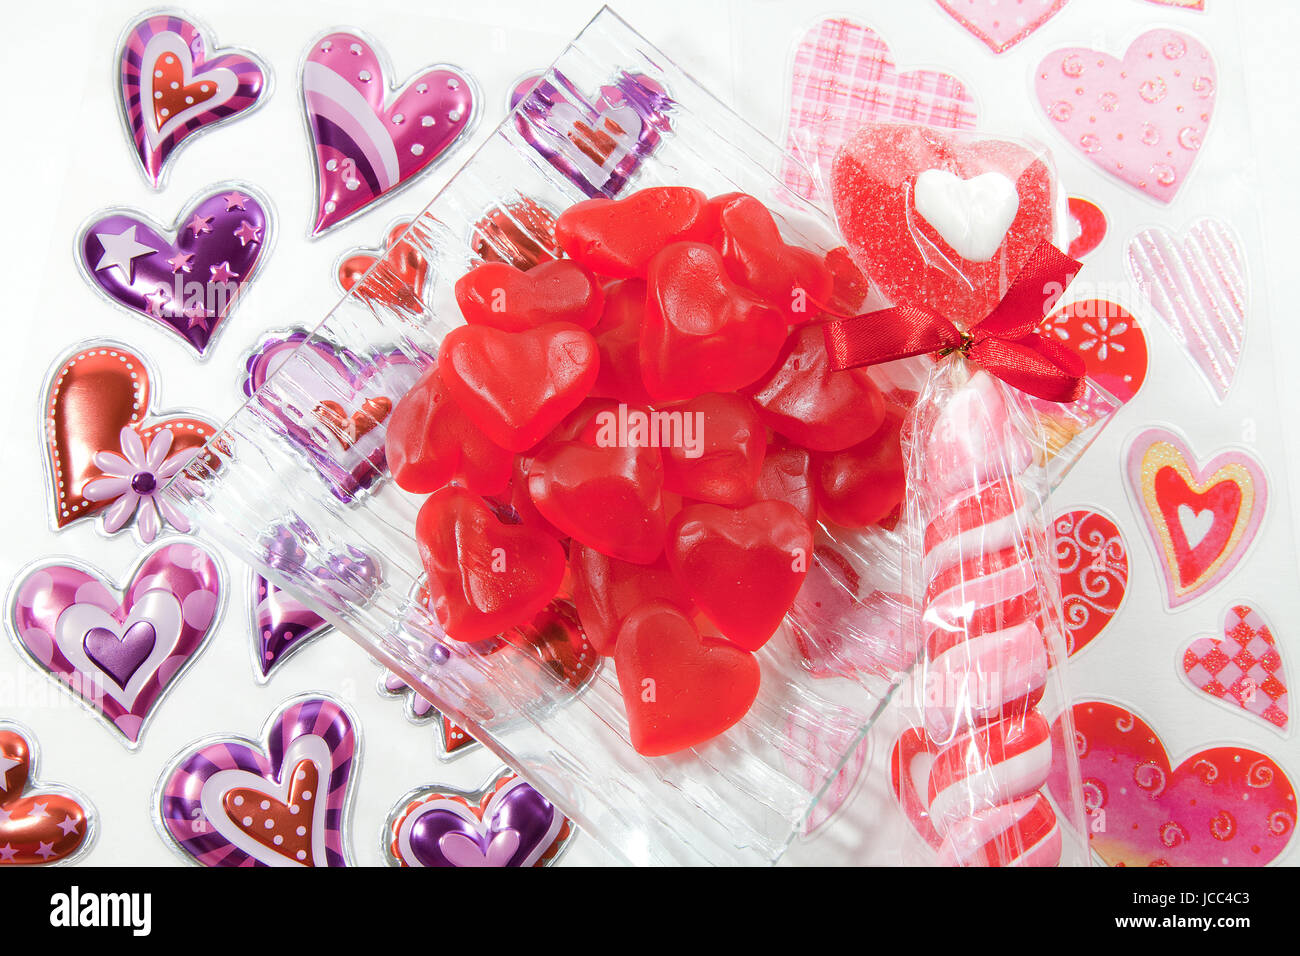 Bol de bonbons coeur rouge sur une surface blanche couverte de coeur autocollants. Banque D'Images